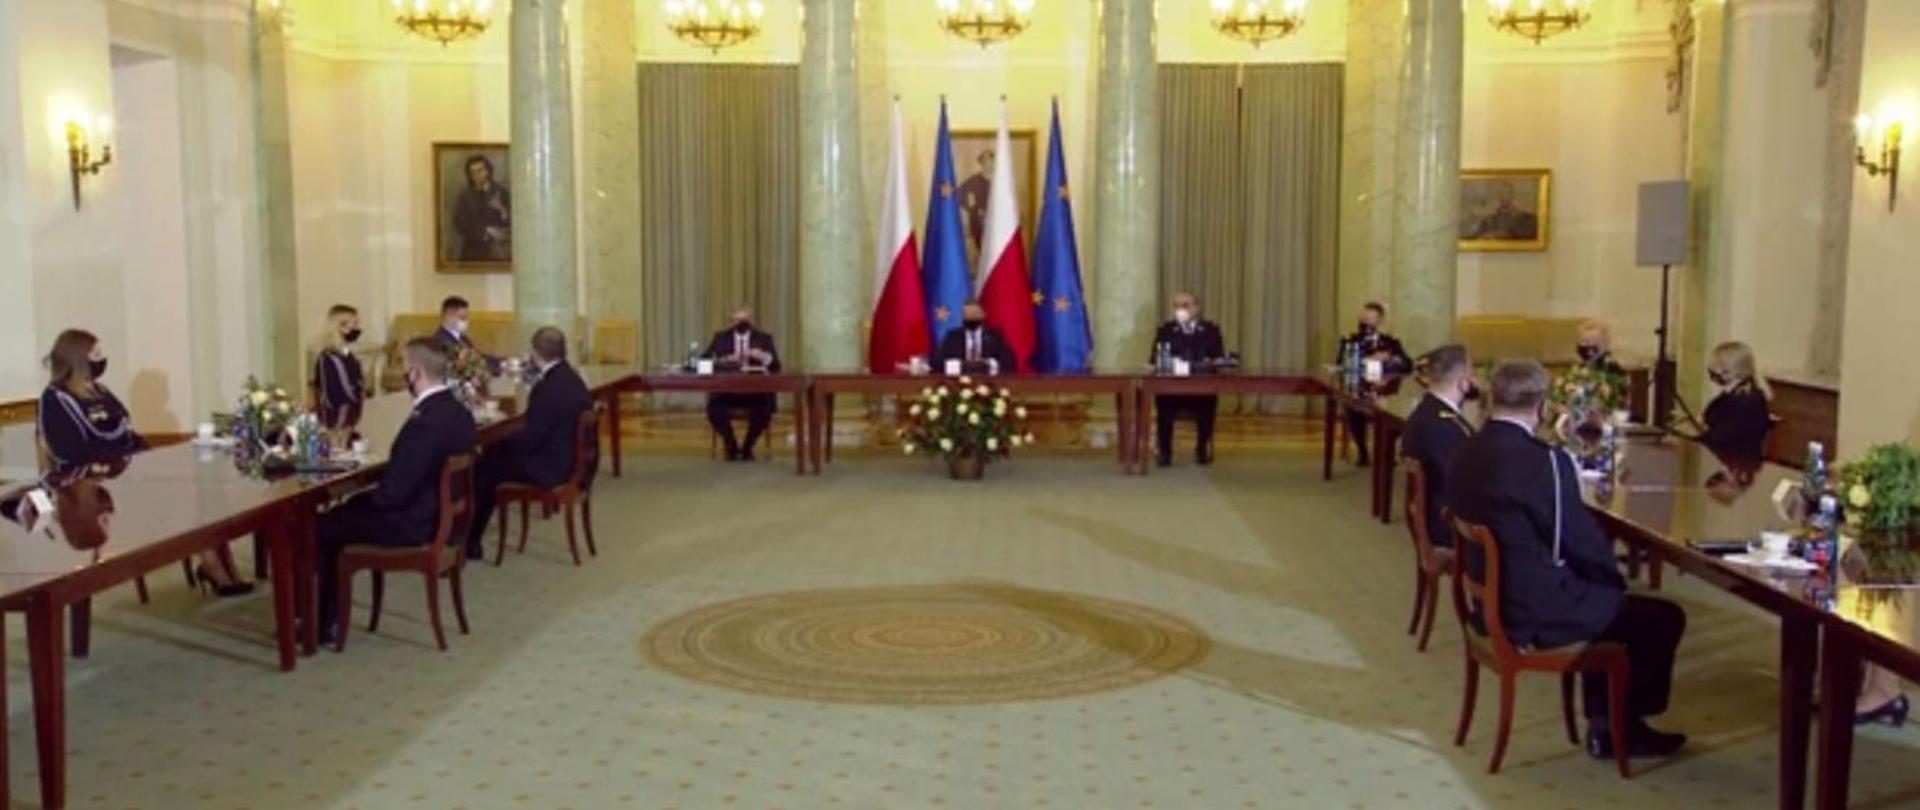 Na wprost przy stole Prezydent RP Pan Andrzej Duda po dwóch stronach stołu siedząc zaproszeni goście strażacy PSP oraz OSP